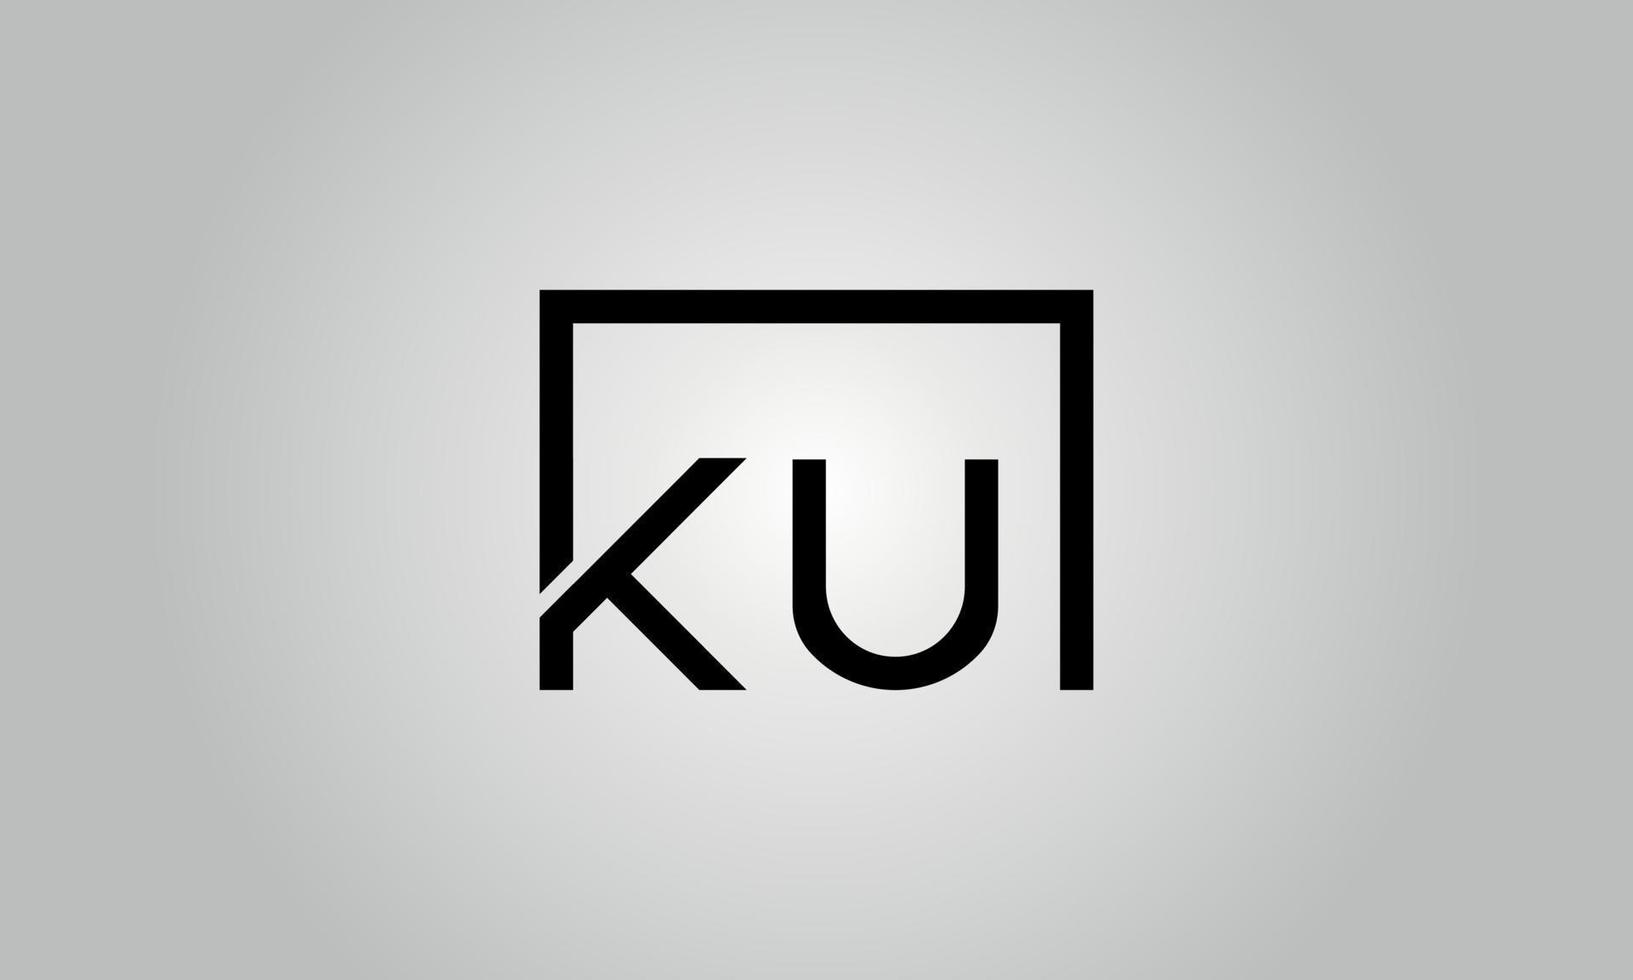 création de logo lettre ku. logo ku avec forme carrée dans le modèle vectoriel gratuit de couleurs noires.